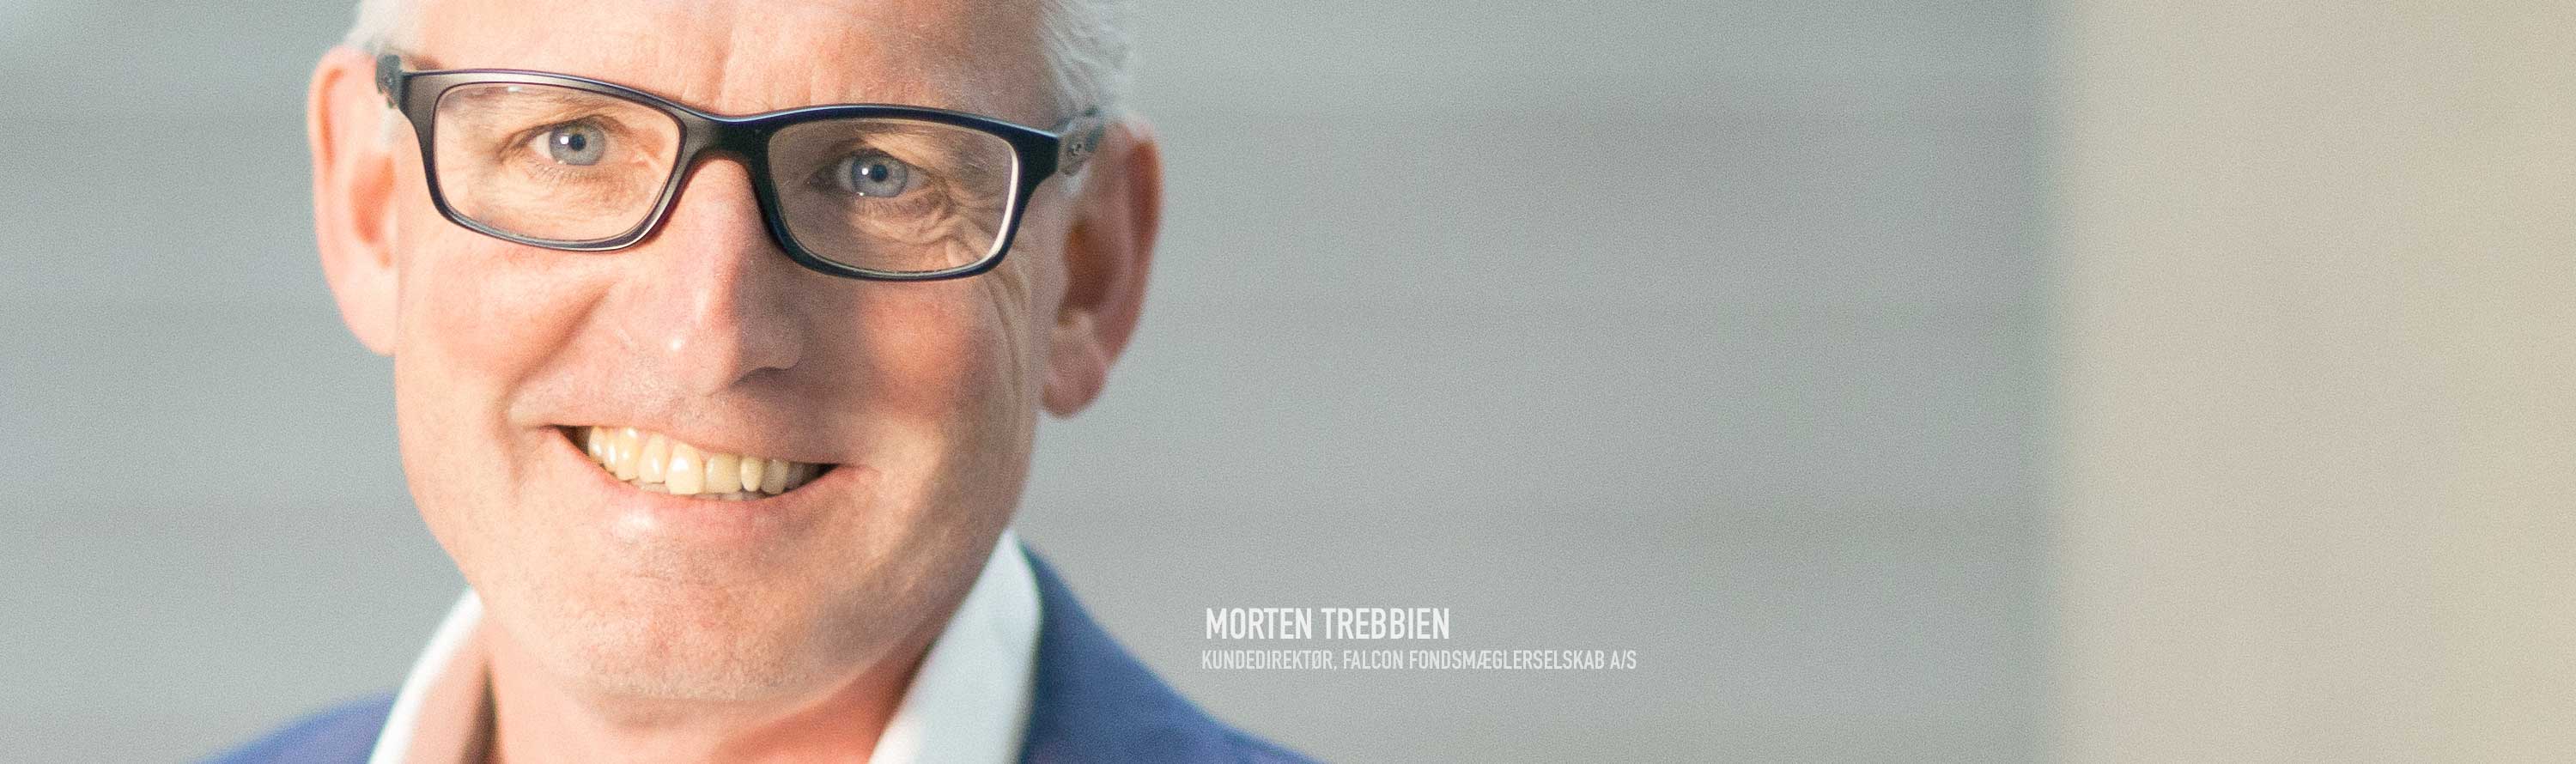 Gratis introduktion med Morten Trebbien, Kundedirektør, Falcon Fondsmæglerselskab A/S